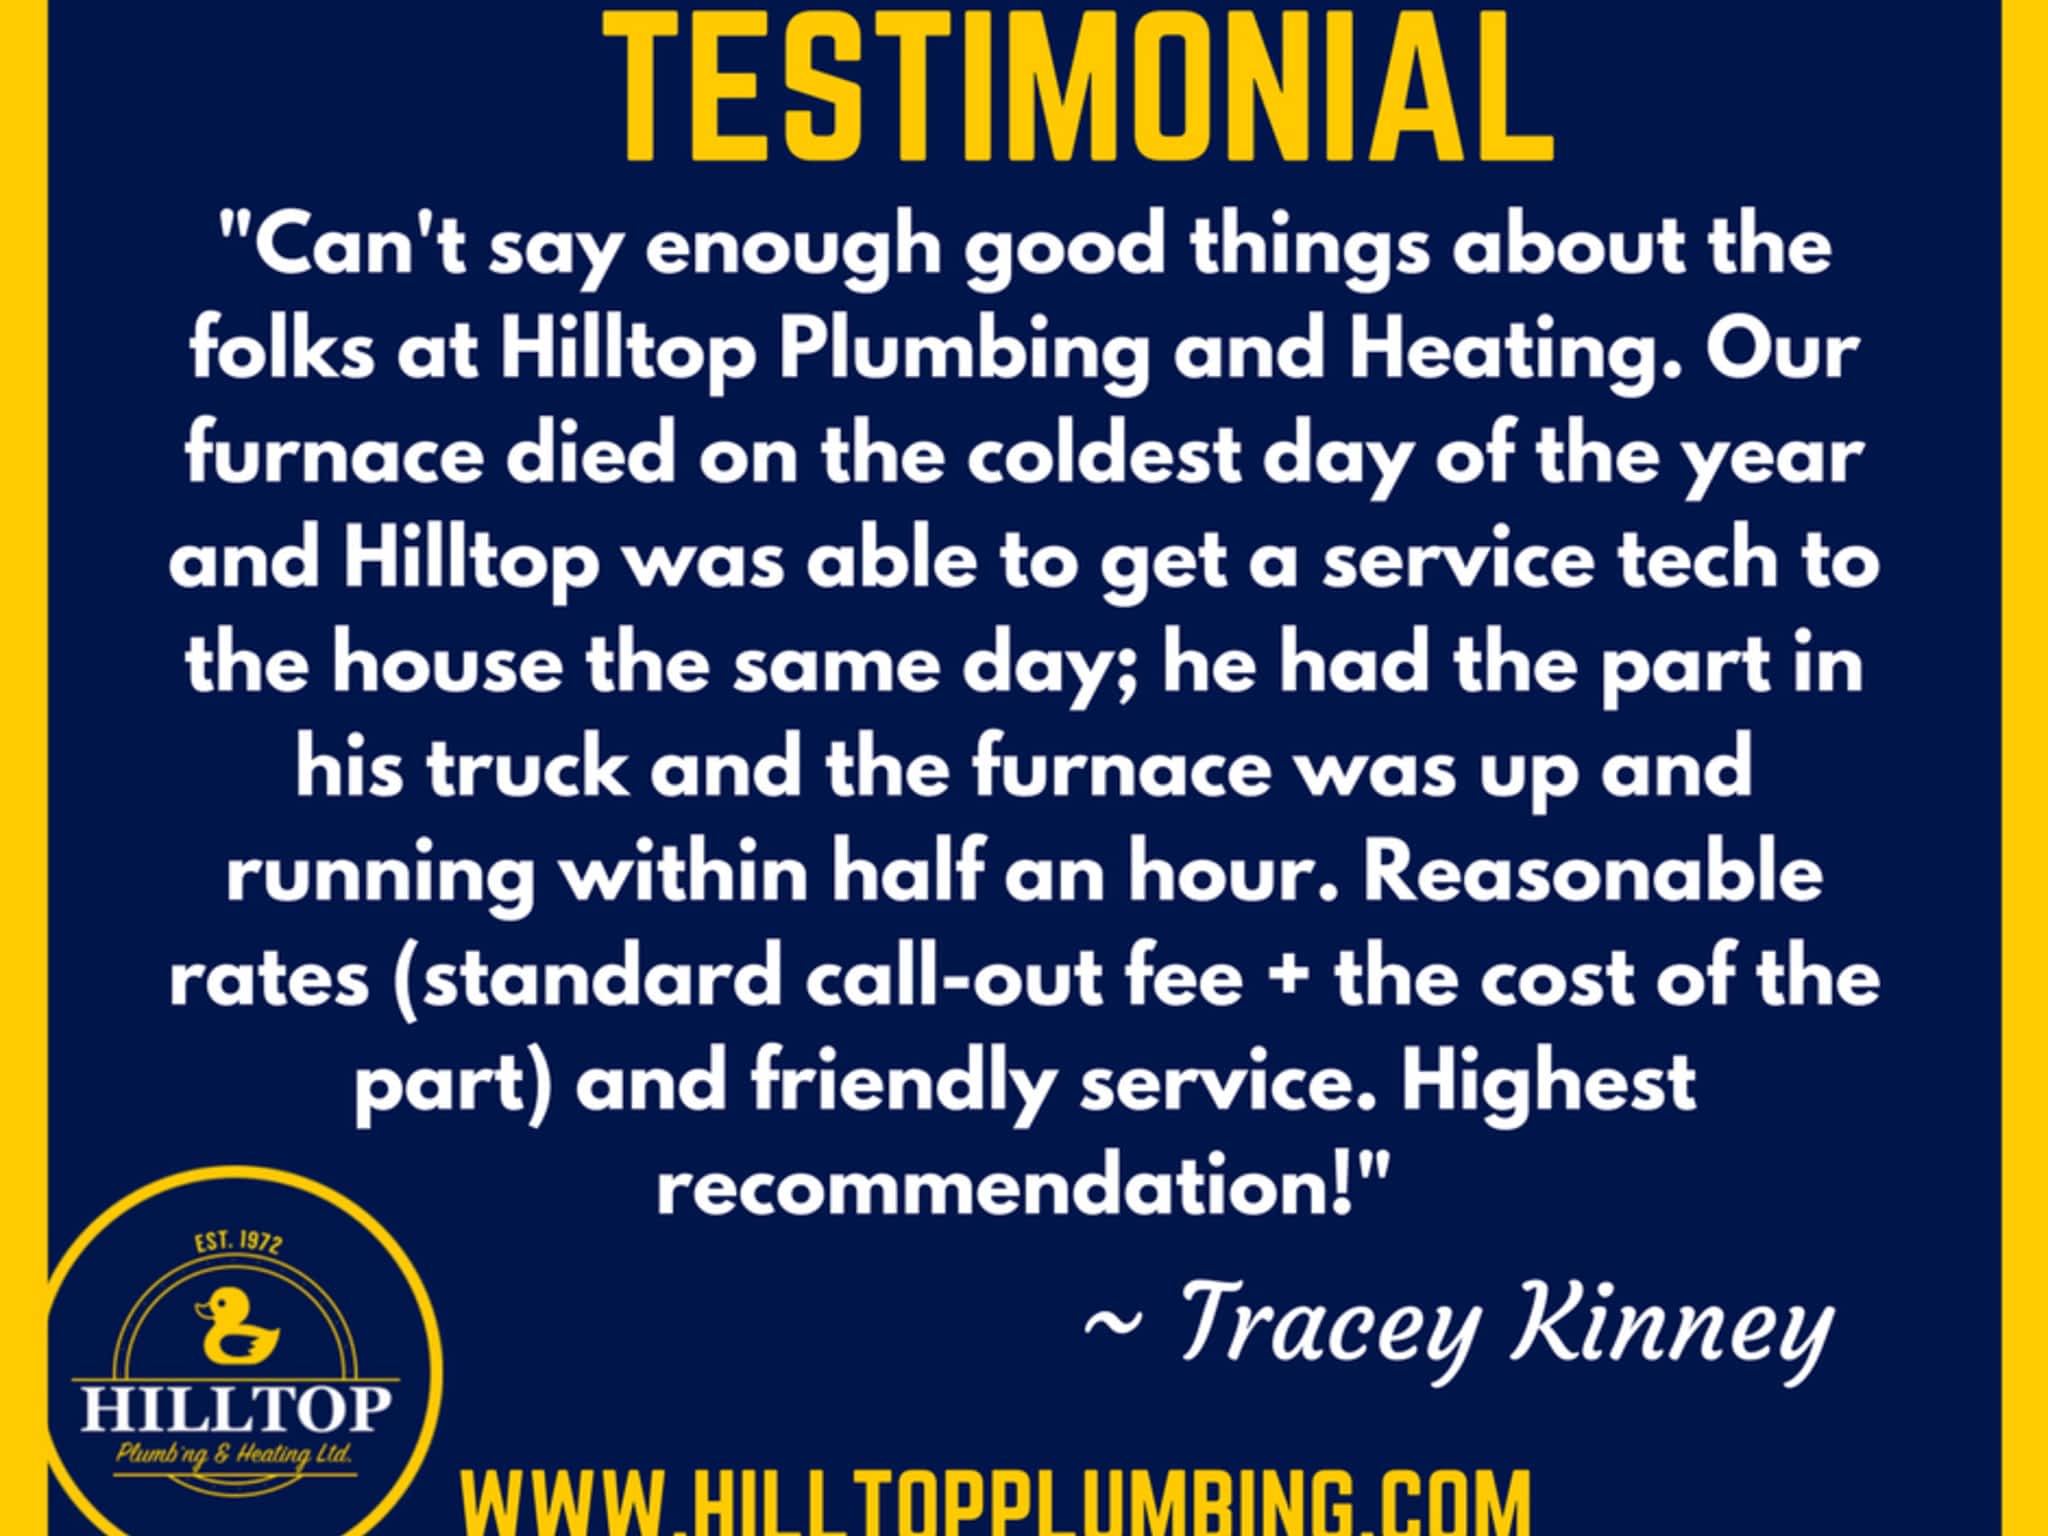 photo Hilltop Plumbing & Heating Ltd